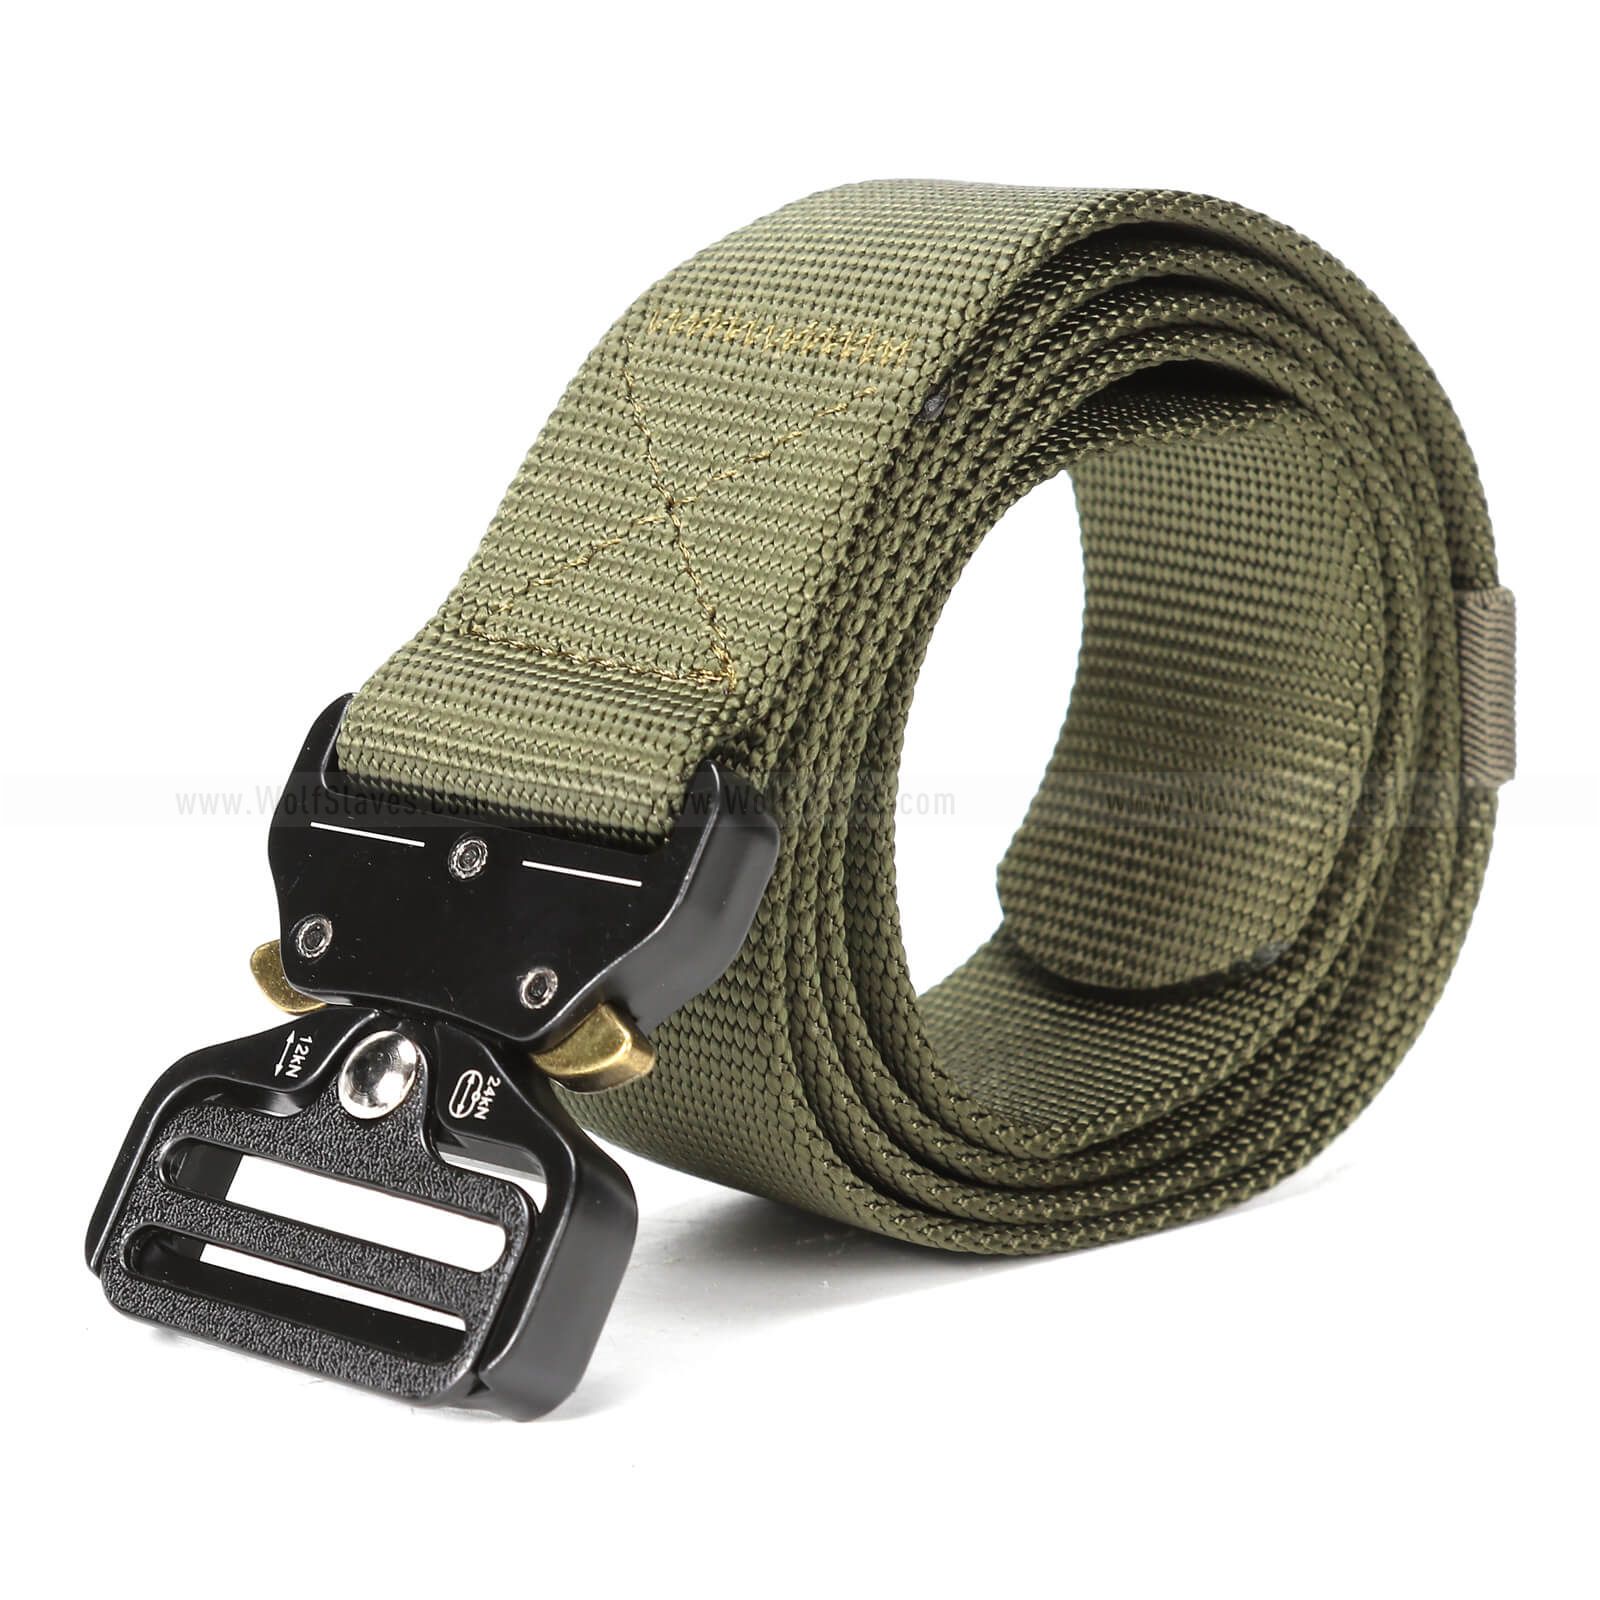 Tactical Belt Military Style Webbing Riggers Web Belt Heavy-Duty Quick-Release Metal Buckle Belt for Men Women 